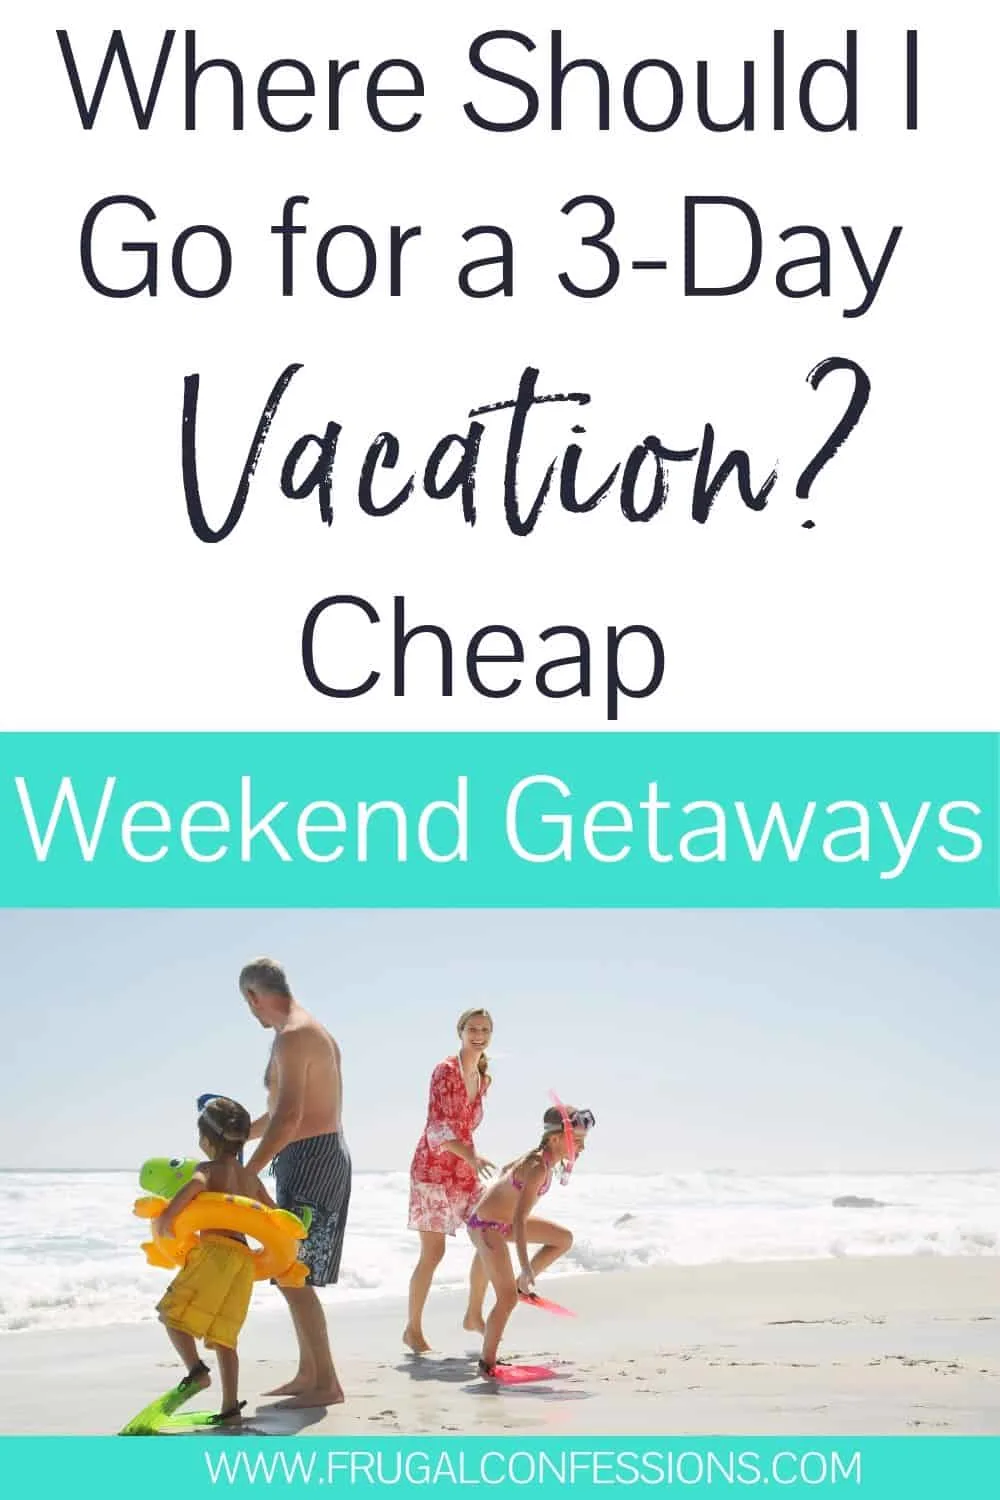 9 Cheap Weekend Getaway Tips (Save on a Weekend Getaway)